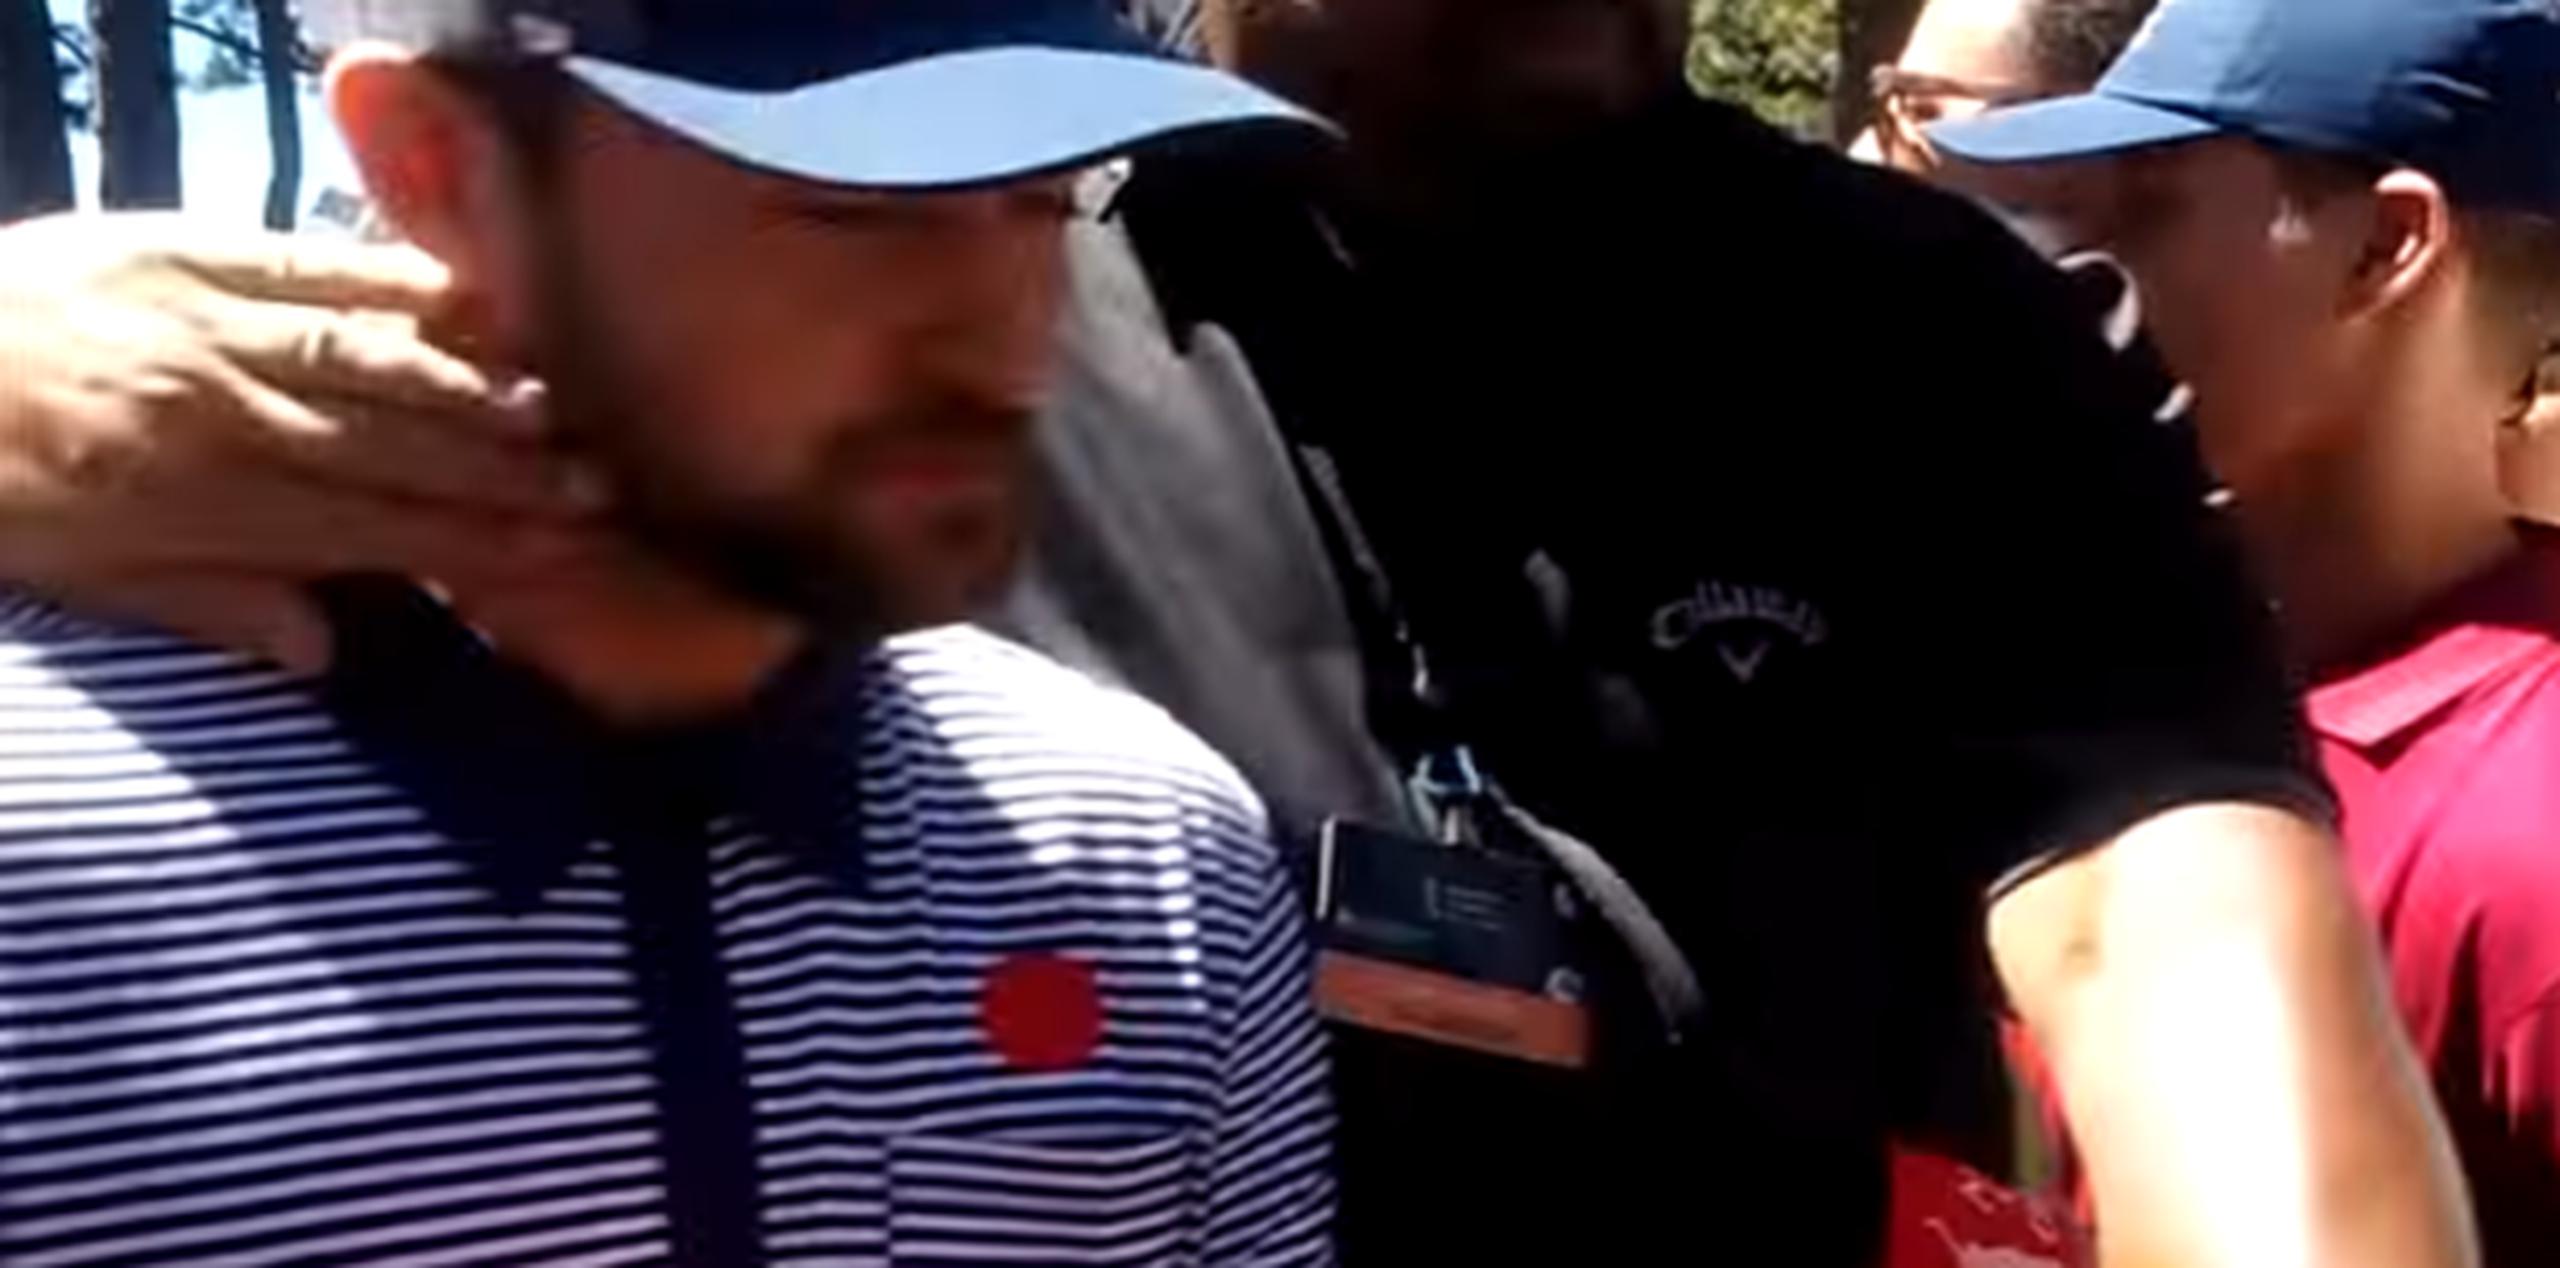 El cantante pasaba entre una multitud durante un torneo de golf cuando ocurrió el incidente. (YouTube)